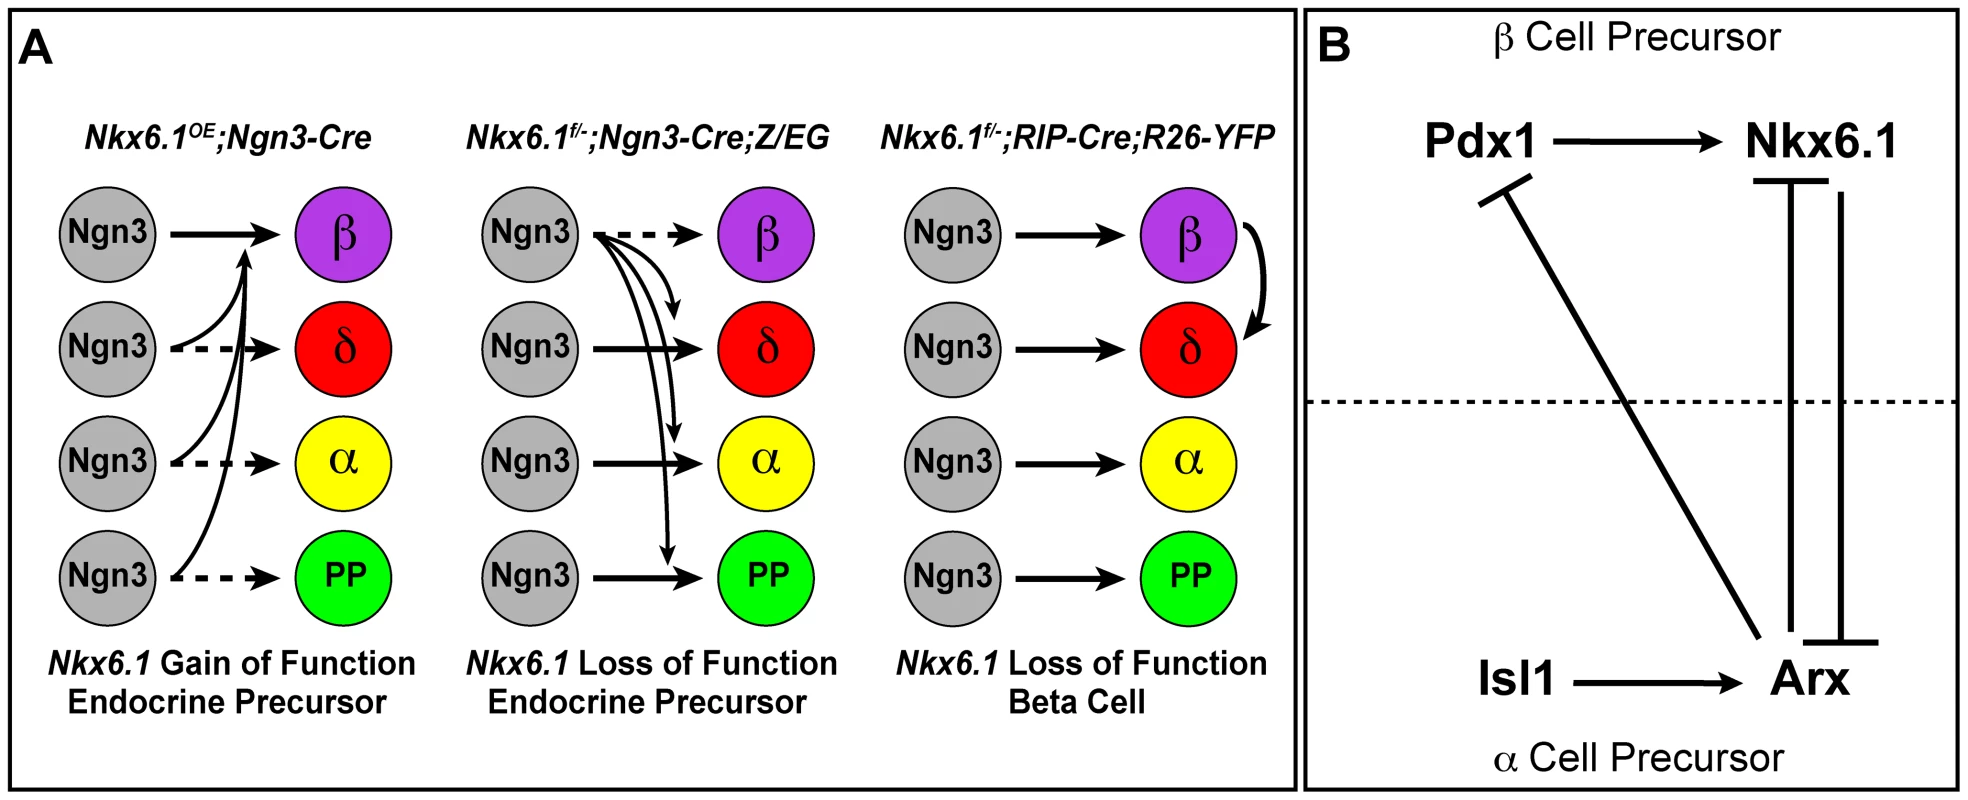 Model of Nkx6.1 function in endocrine precursor cells.